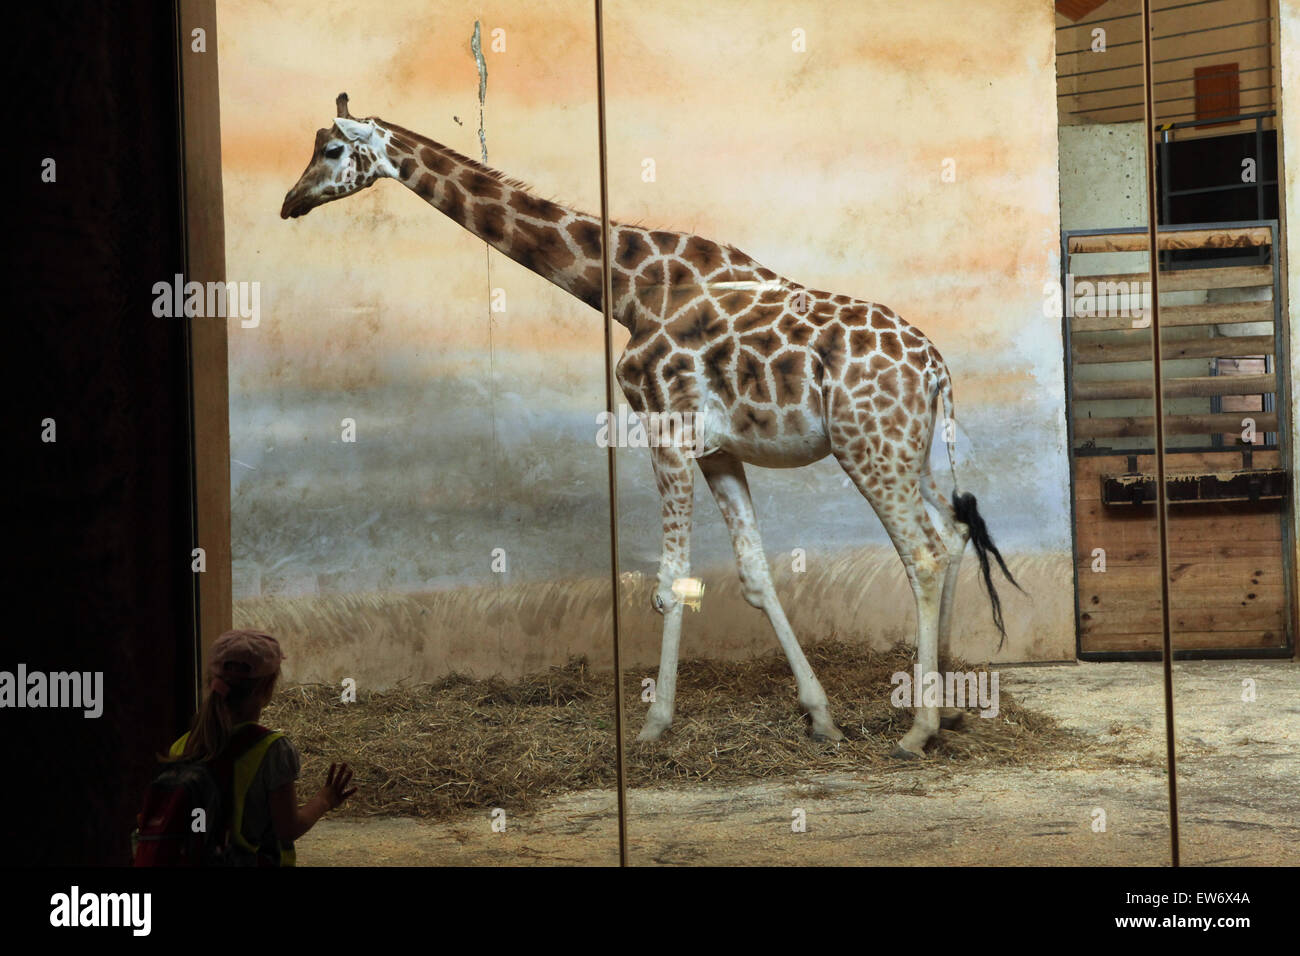 Visiteur regarde les Rothschild Girafe (Giraffa camelopardalis rothschildi) au Zoo de Prague, République tchèque. Banque D'Images